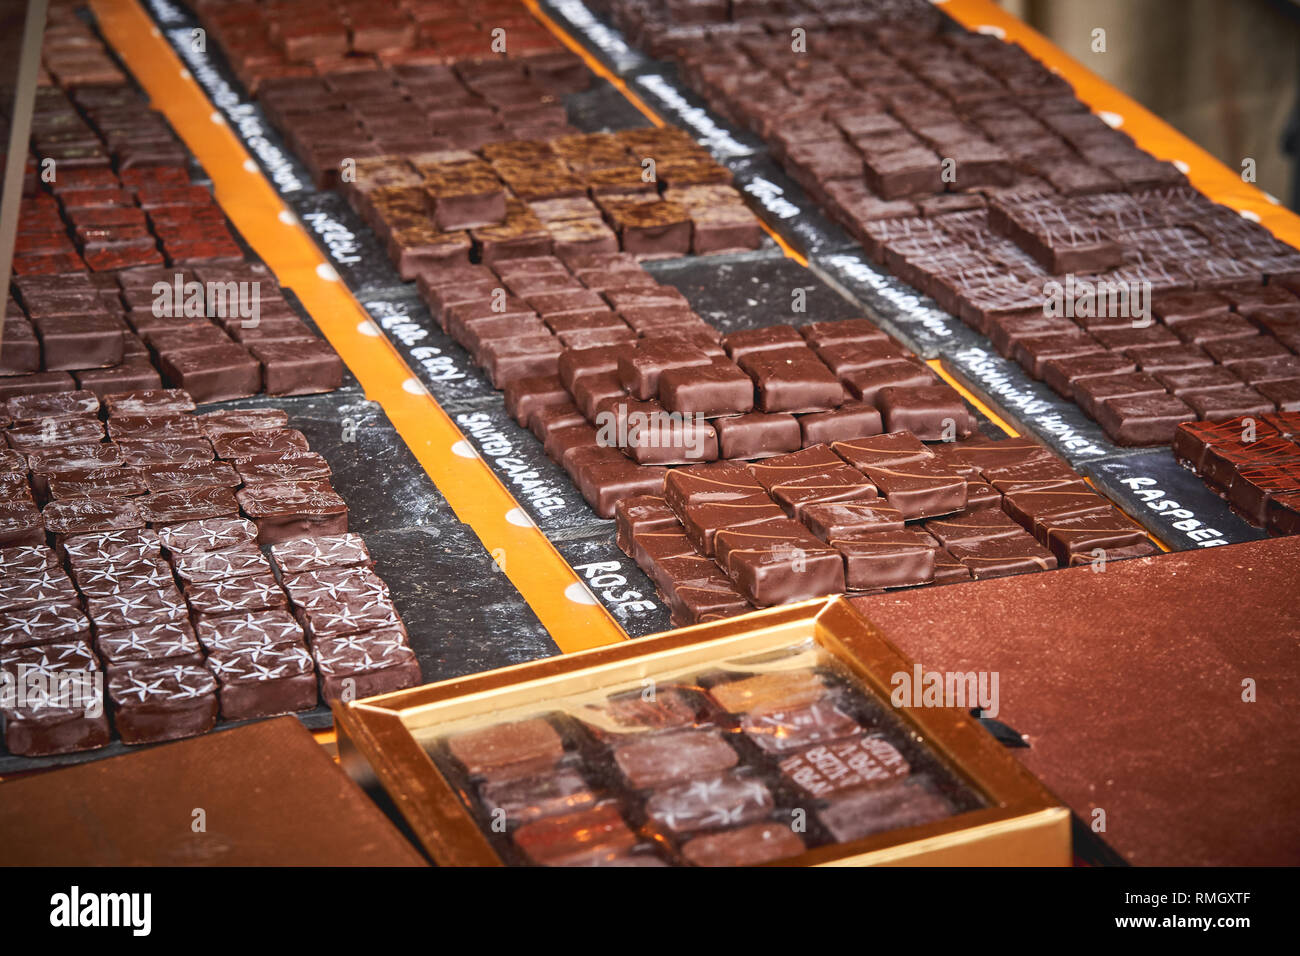 Différents types de chocolats au carré sur l'affichage à un décrochage de boulangerie dans un marché local. Concept alimentaire. Le format paysage. Banque D'Images